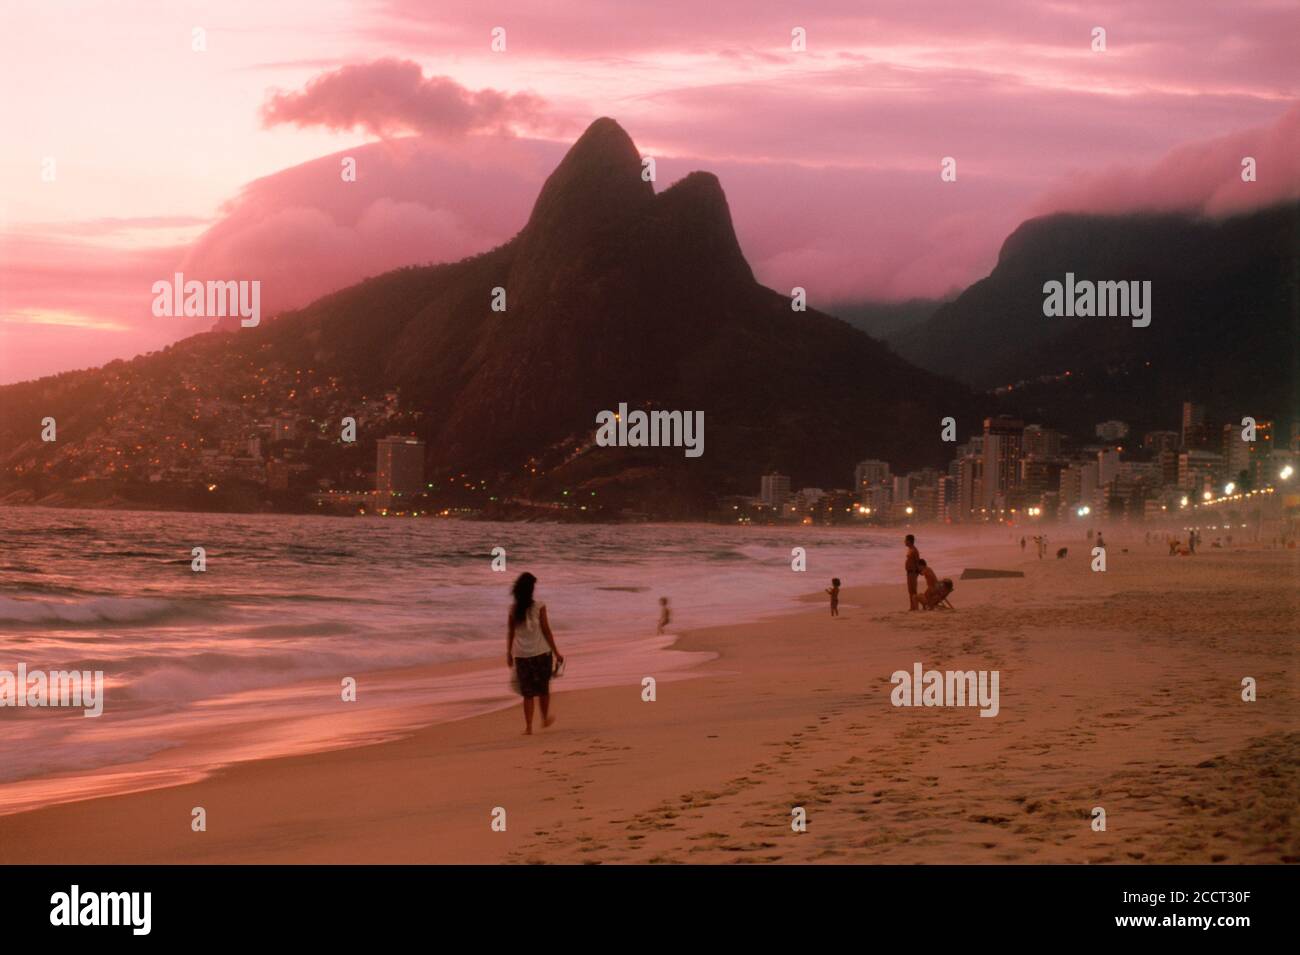 Femme sur les plages de sable d'Ipanema à Rio de Janeiro au coucher du soleil avec les deux montagnes appelé le Dois Irmãos ou les frères Banque D'Images